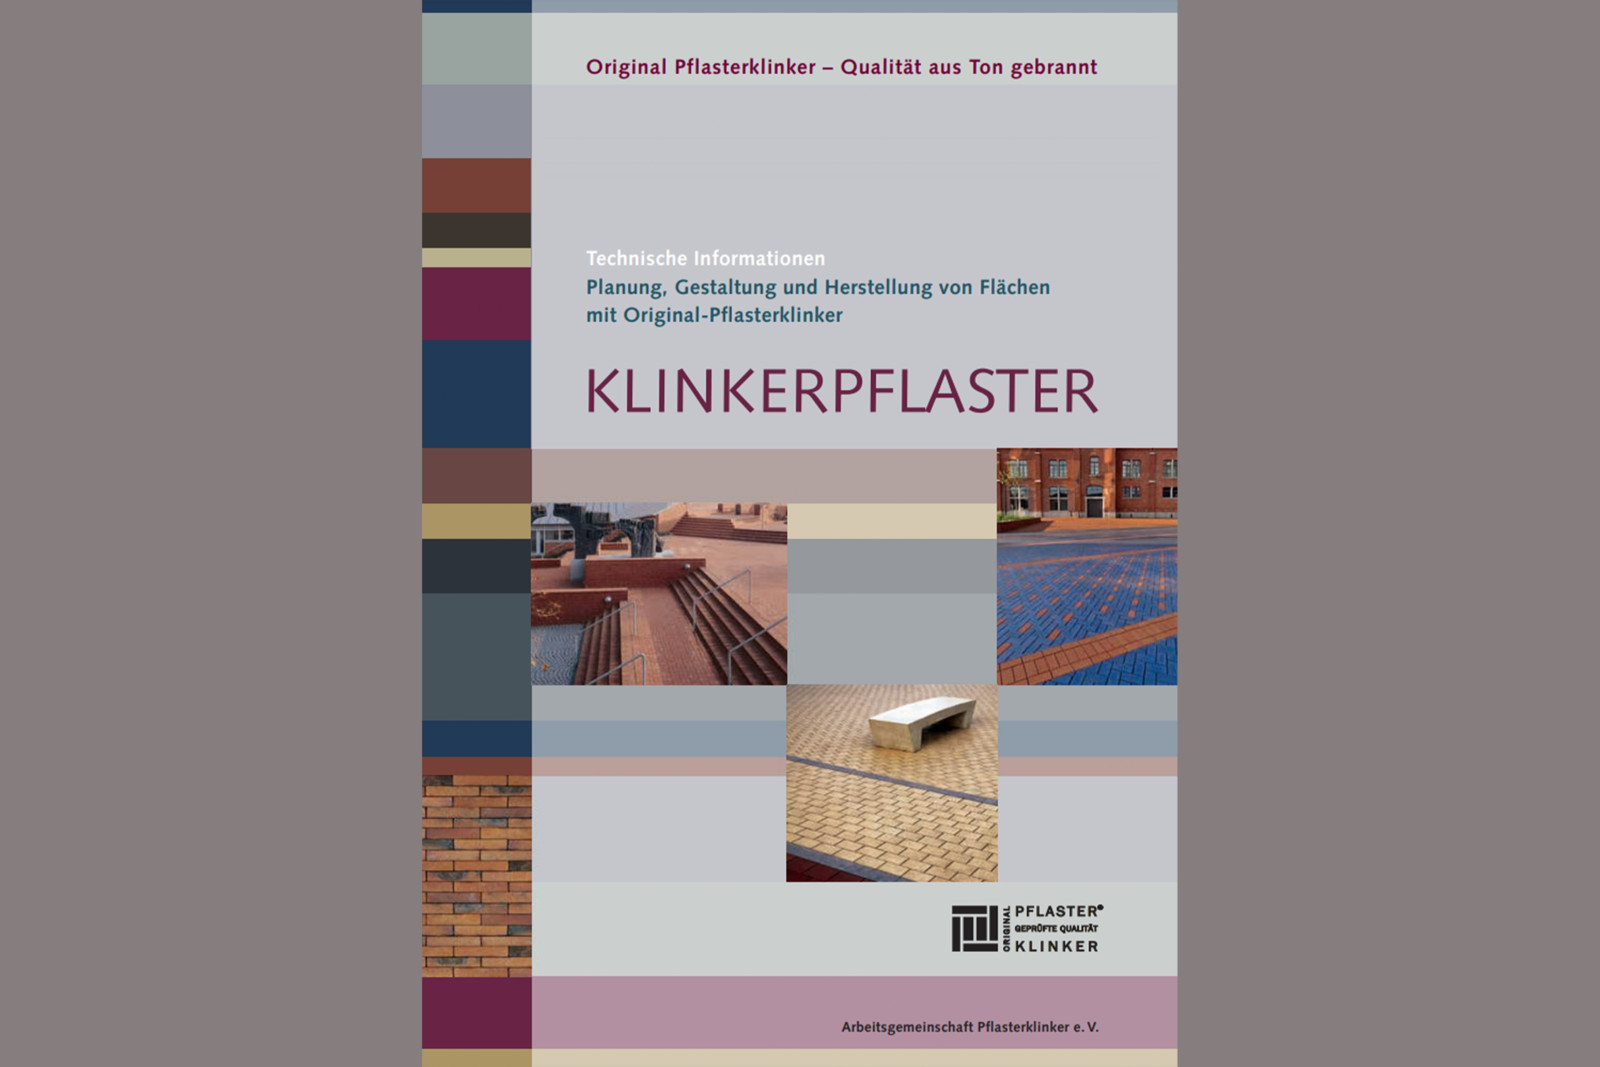 Die von der Arbeitsgemeinschaft Pflasterklinker e.V. herausgegebene Broschüre „Klinkerpflaster - Technische Informationen“ ist eine praktische Arbeitshilfe für die Planung, Gestaltung und Herstellung von Flächen mit Pflasterklinker.